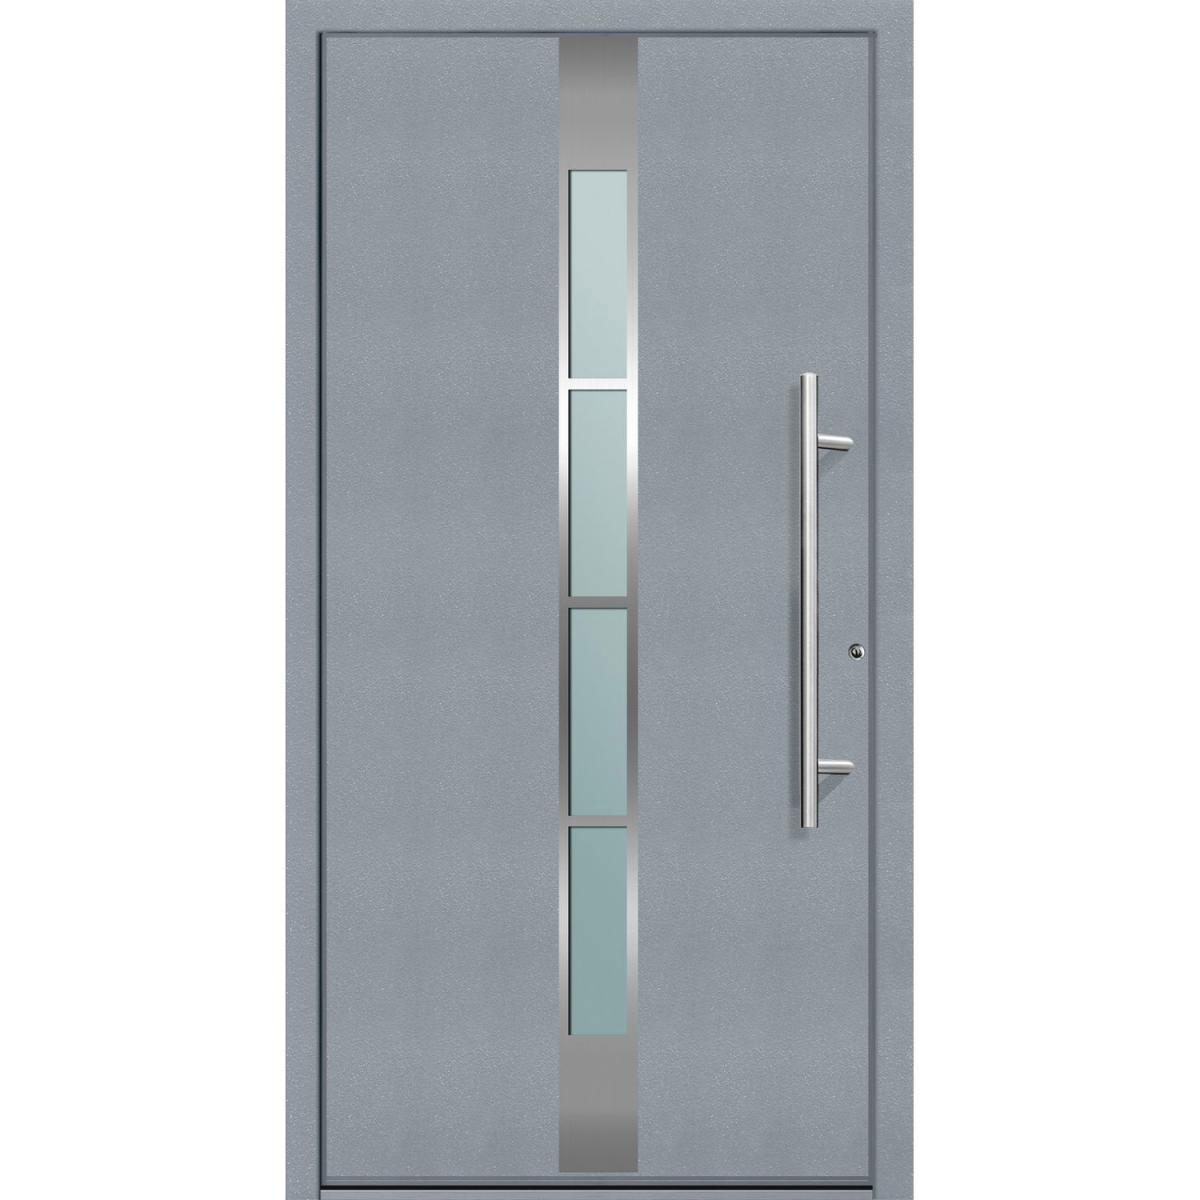 Aluminium Sicherheits-Haustür „Ferrara Superior“, 60mm, grau, 110x210 cm, Anschlag rechts, inkl. Griffset